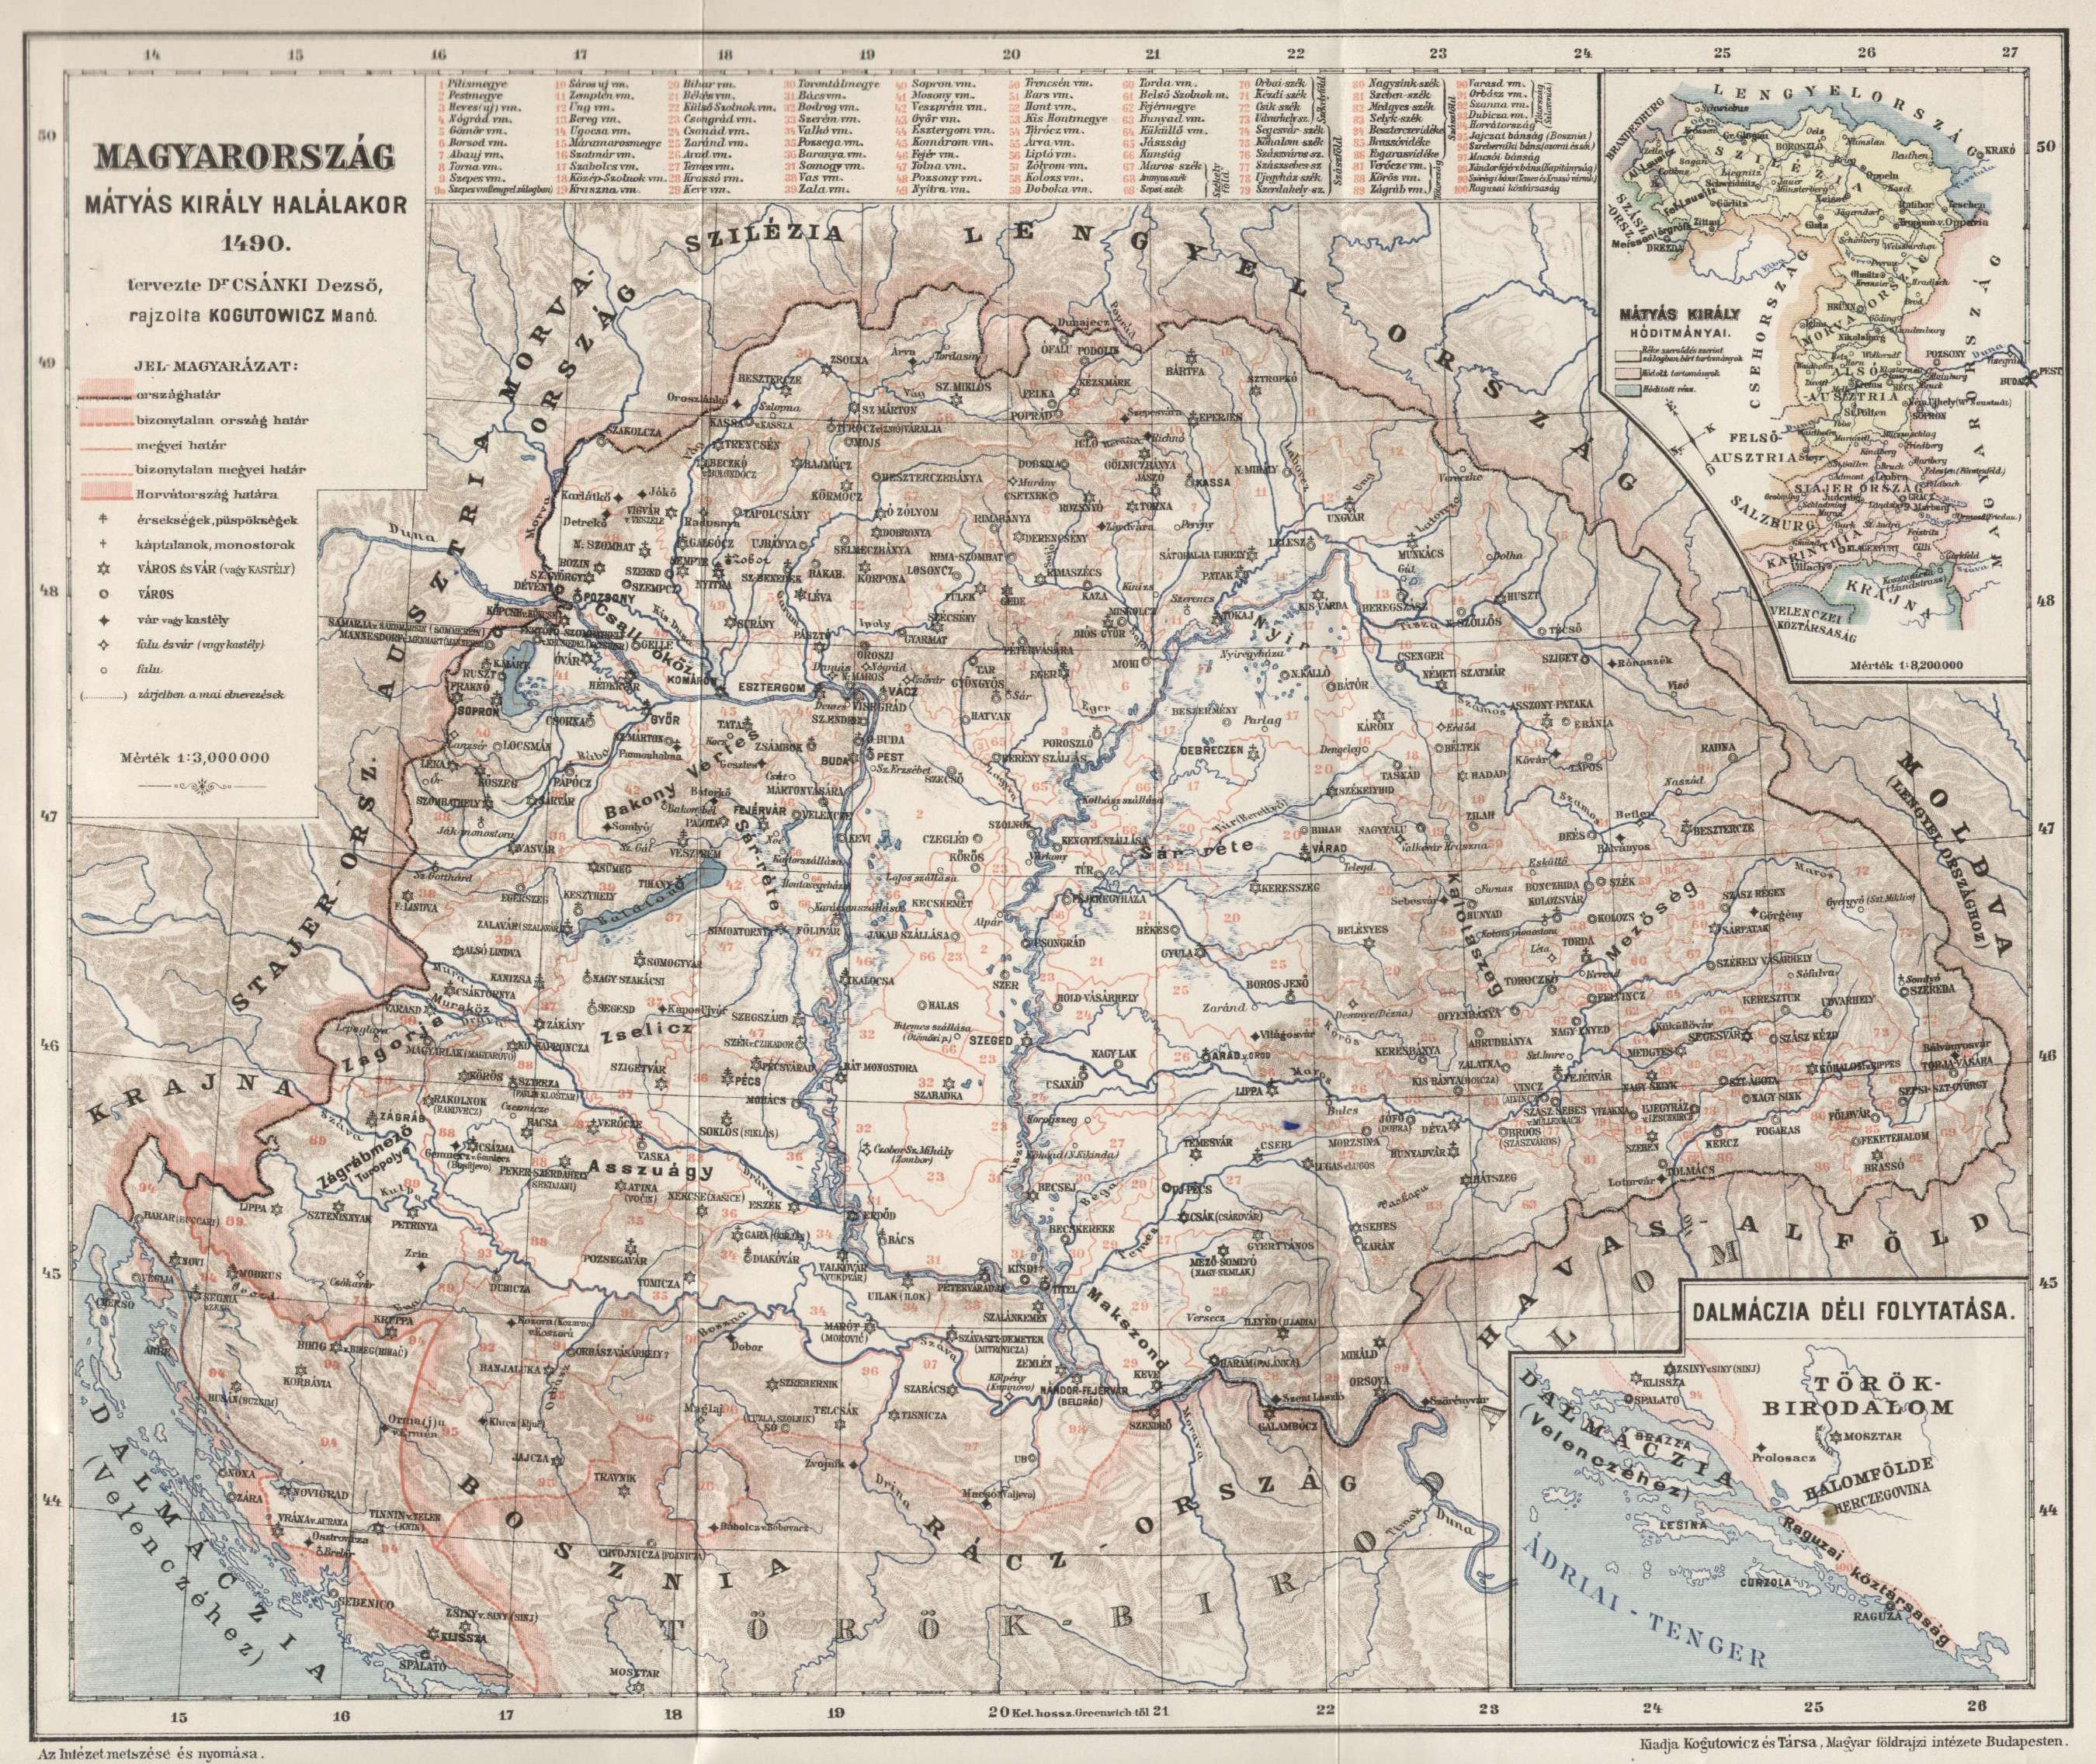 Magyarország 1490-ben – Kogutowicz Manó térképe Csánki Dezső 1890-ben megjelent, Magyarország történelmi földrajza a Hunyadiak korában című művében